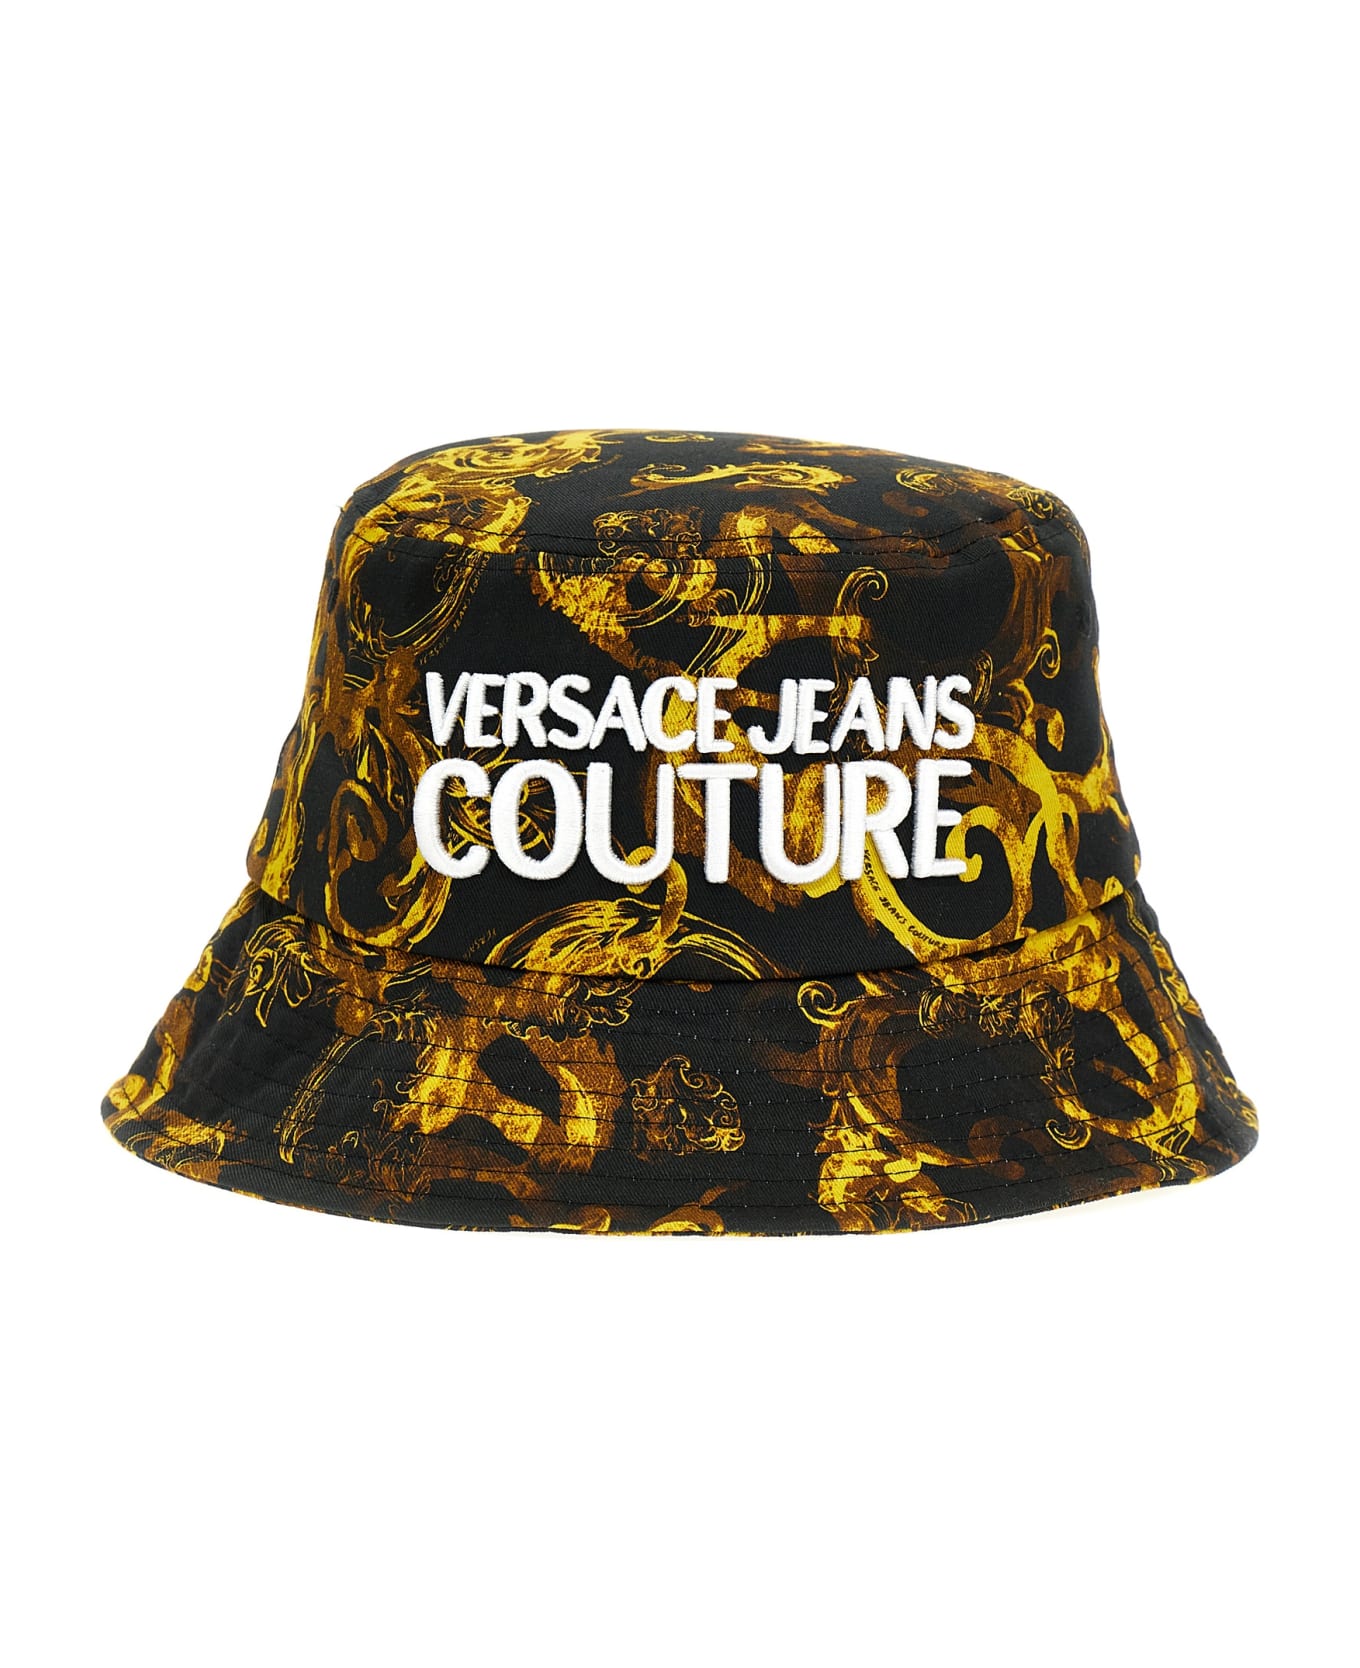 Versace Jeans Couture 'barocco' Bucket Hat - Multicolor 帽子